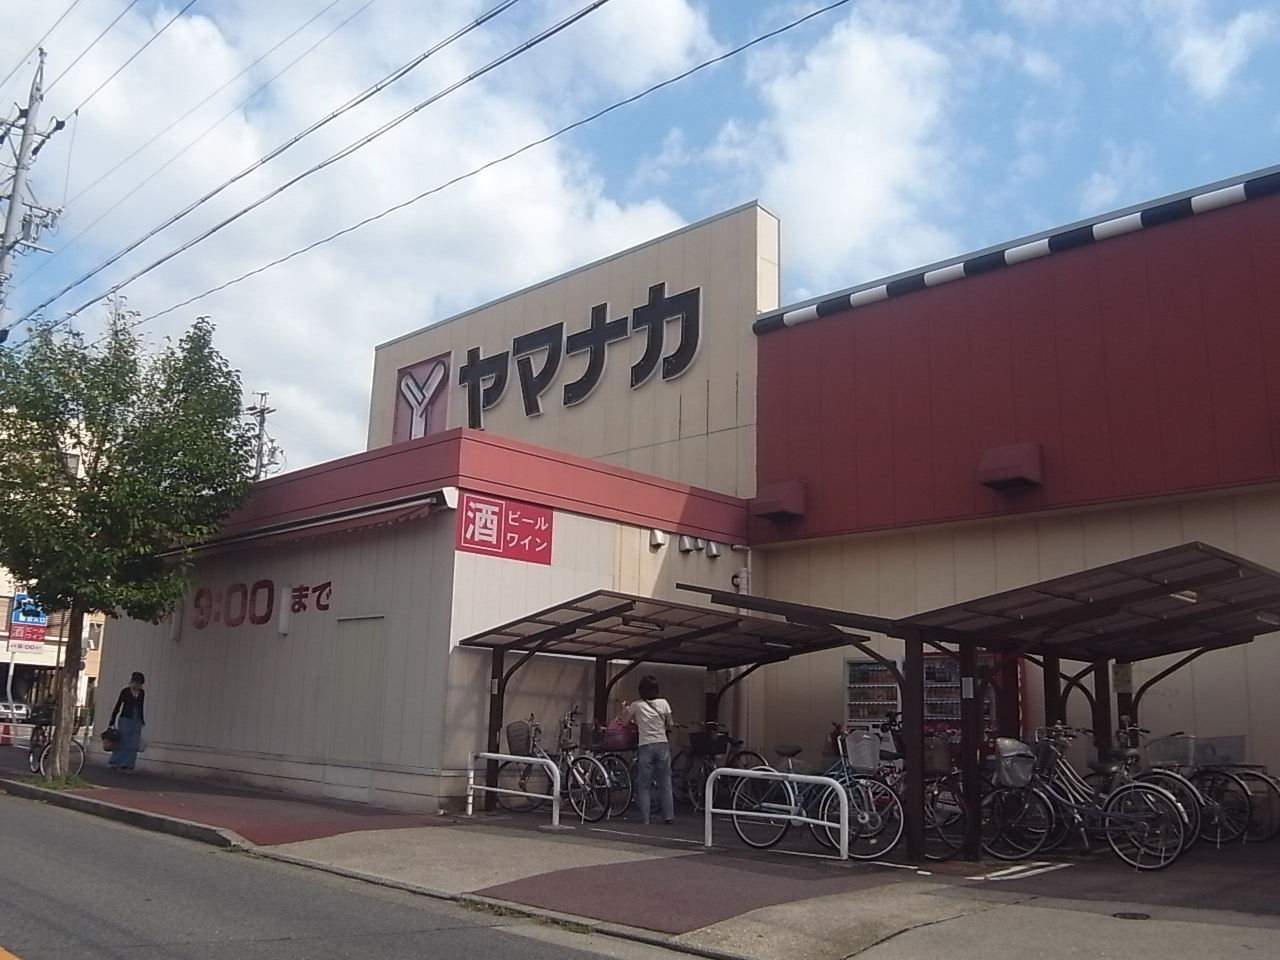 Supermarket. Yamanaka Mizuho store up to (super) 570m